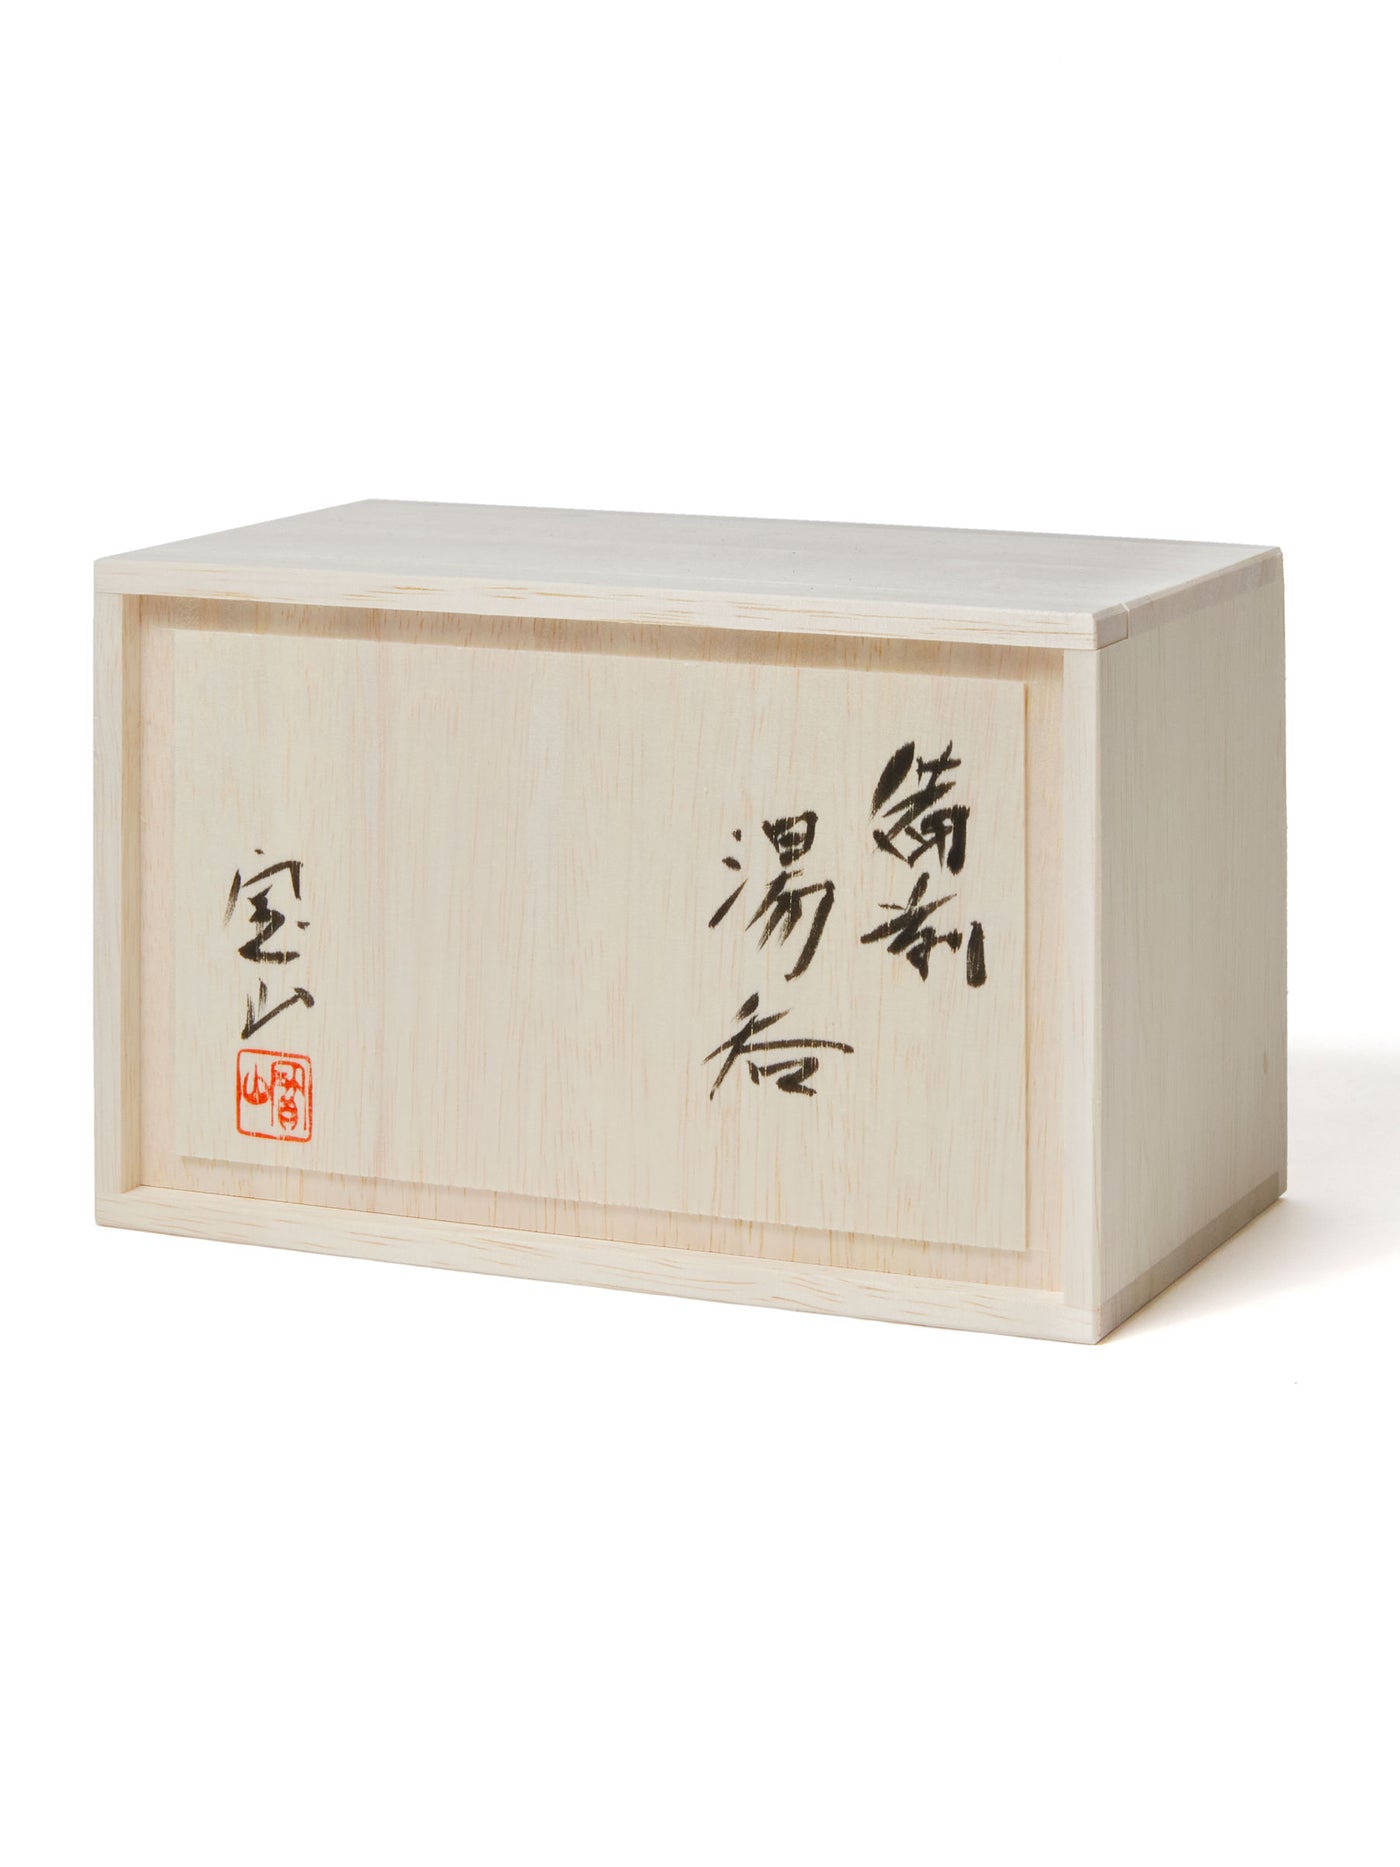 Goma Bizen Ware Yunomi Teacup Set by Hozan (7½ fl.oz/220ml)